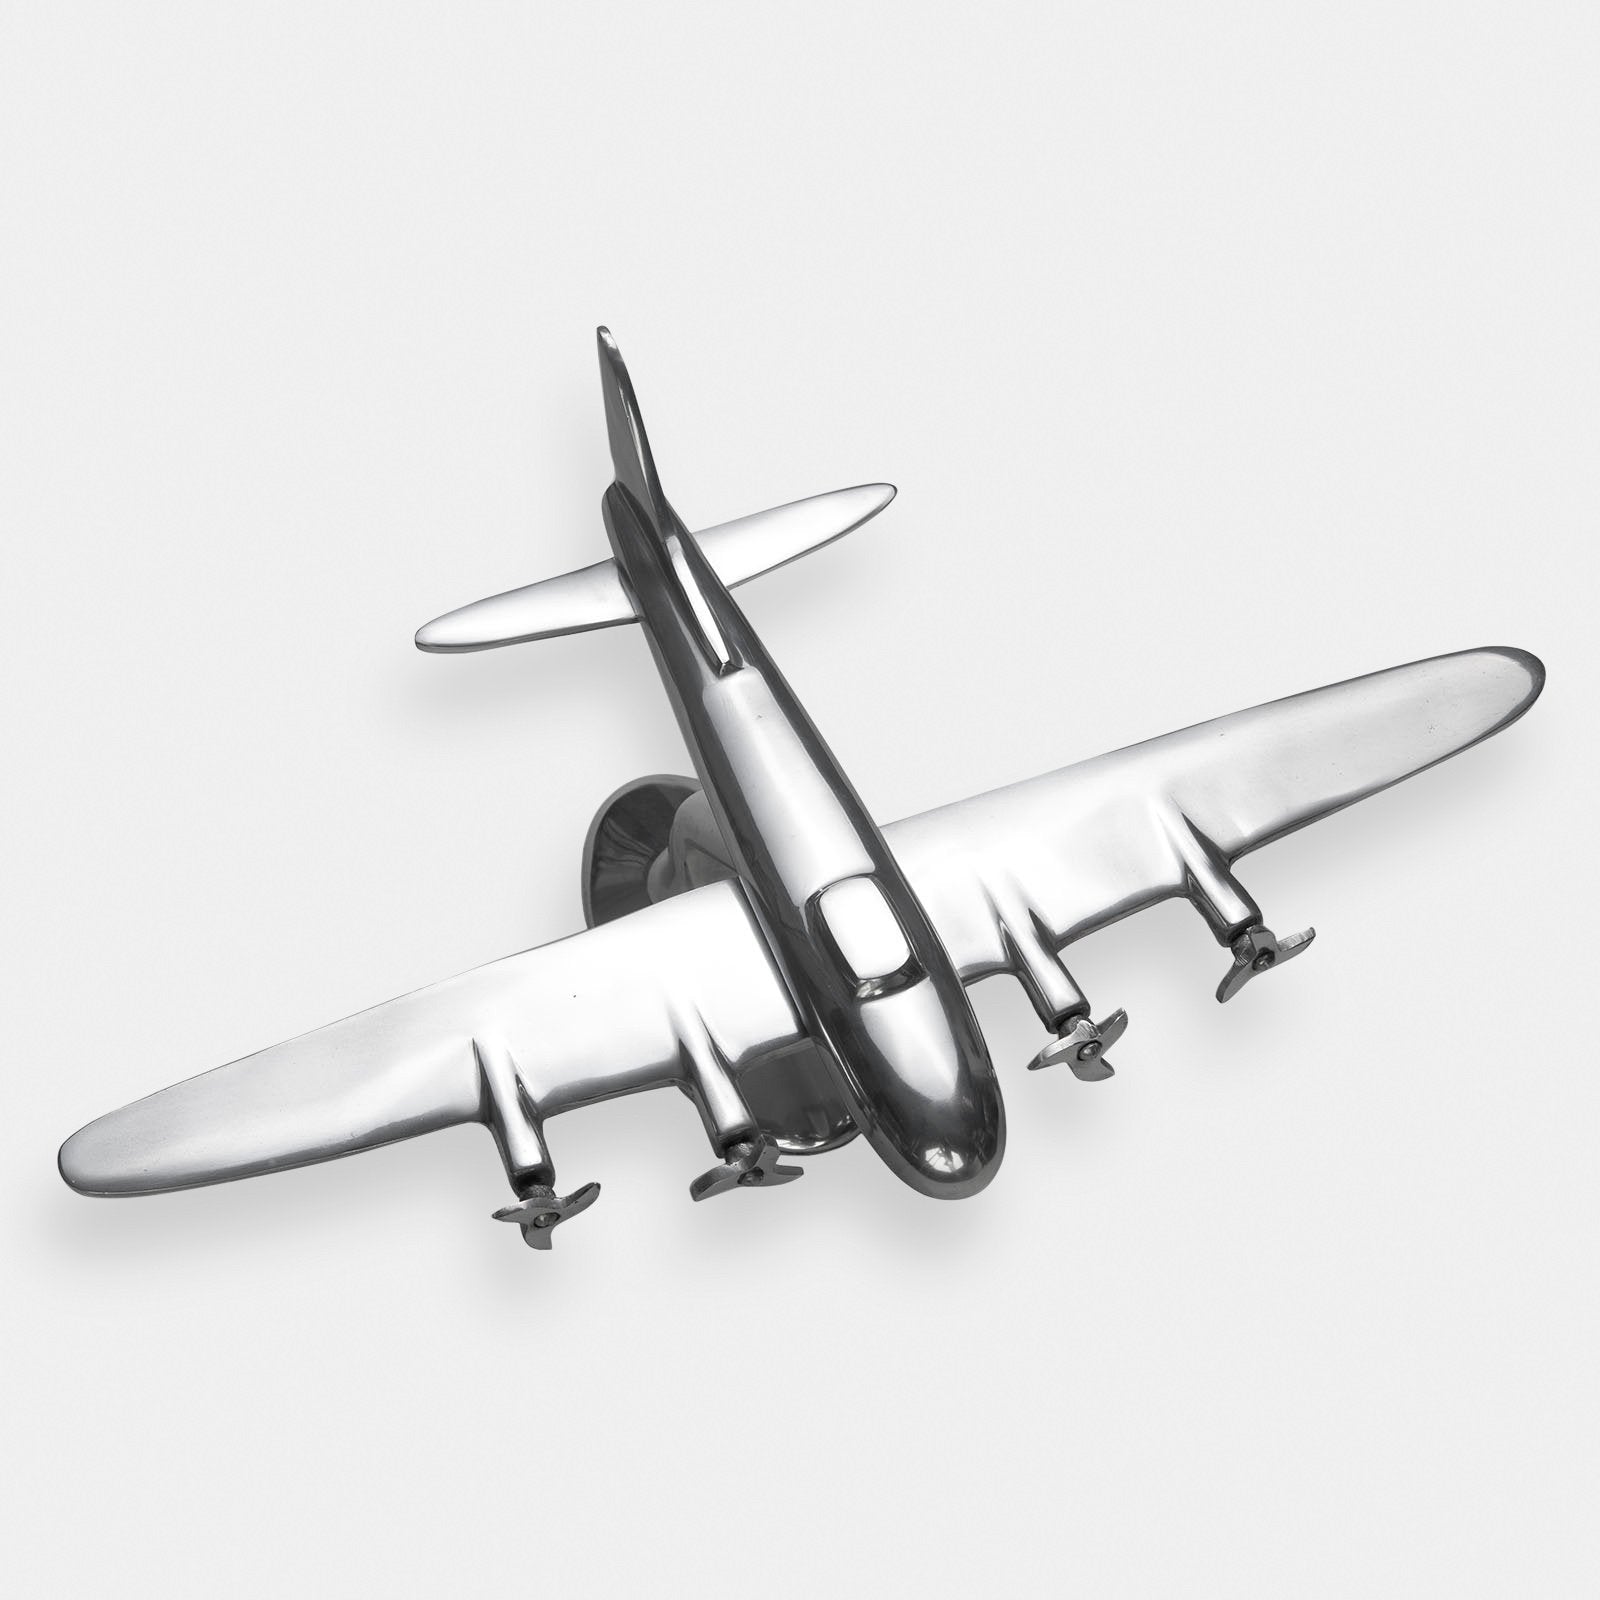 Vintage Aluminium Air Plane Model